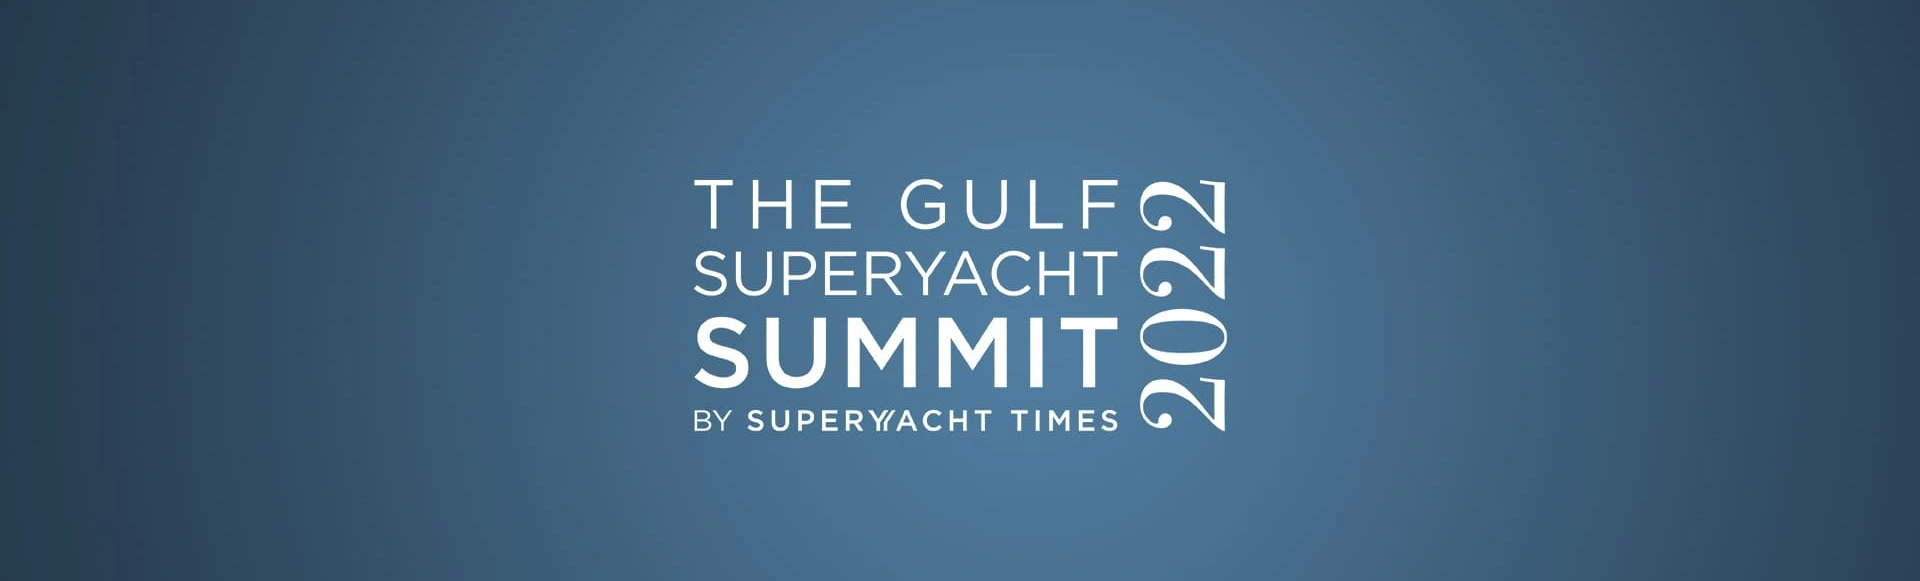 Gulf Superyacht Summit
